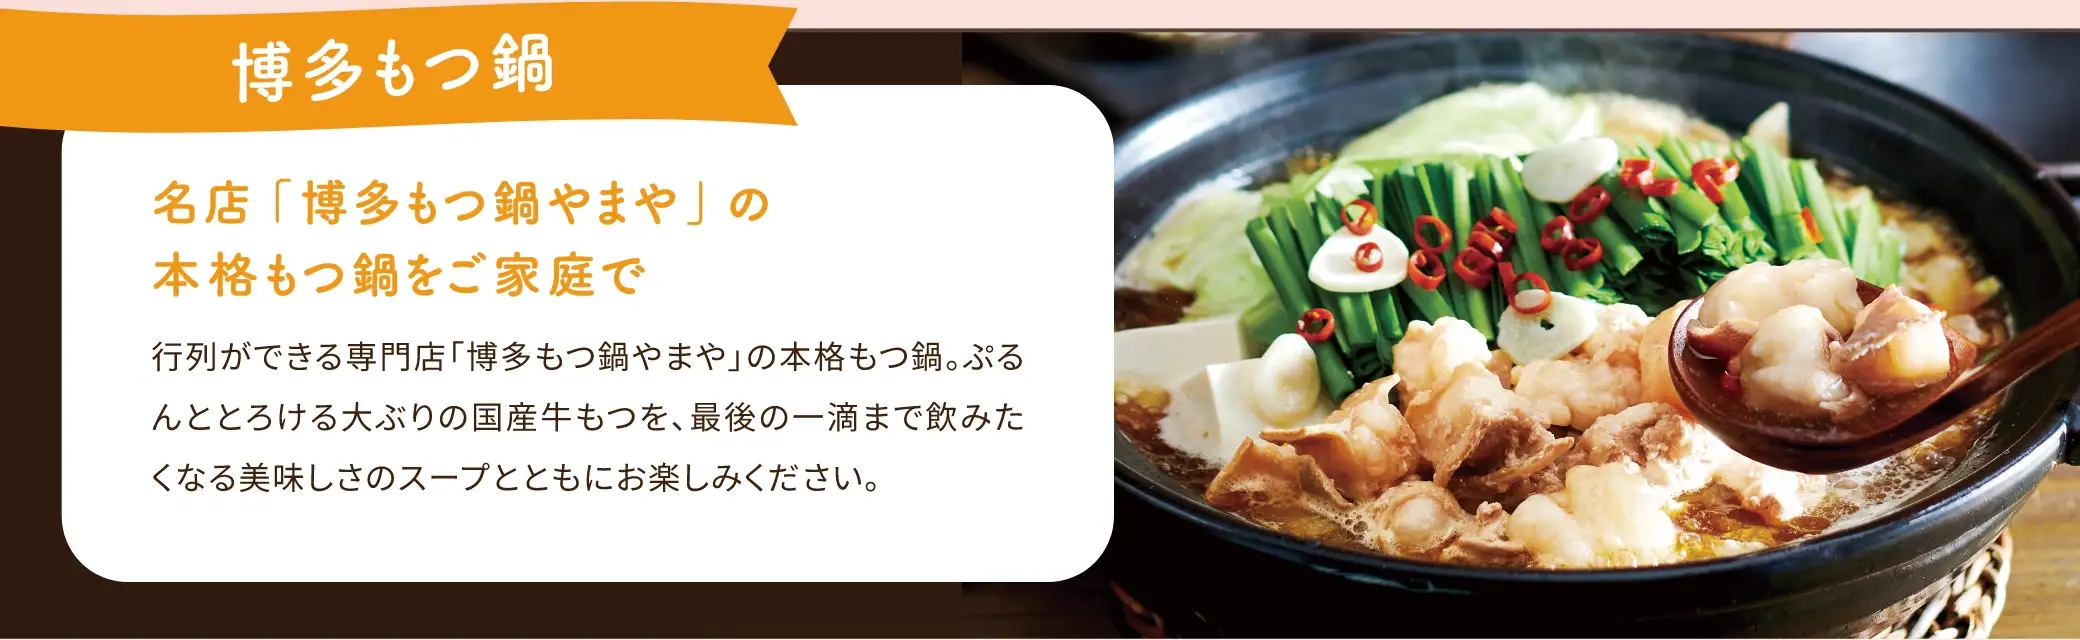 博多もつ鍋は、名店「博多もつ鍋やまや」の本格もつ鍋をご家庭で味わえる商品です。